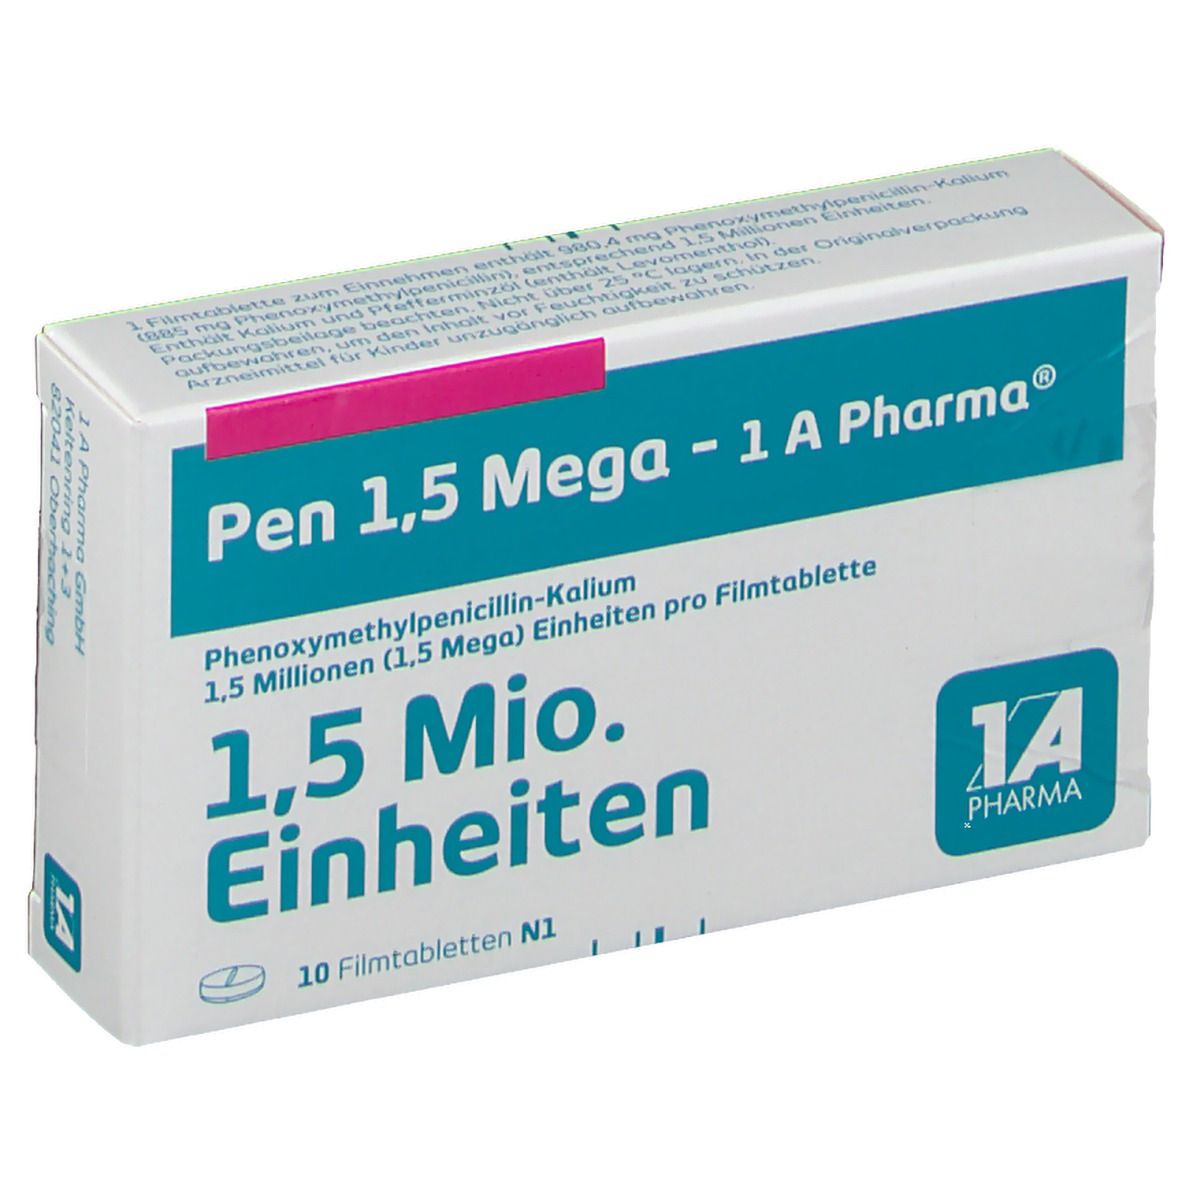 Pen 1,5 Mega - 1 A Pharma®